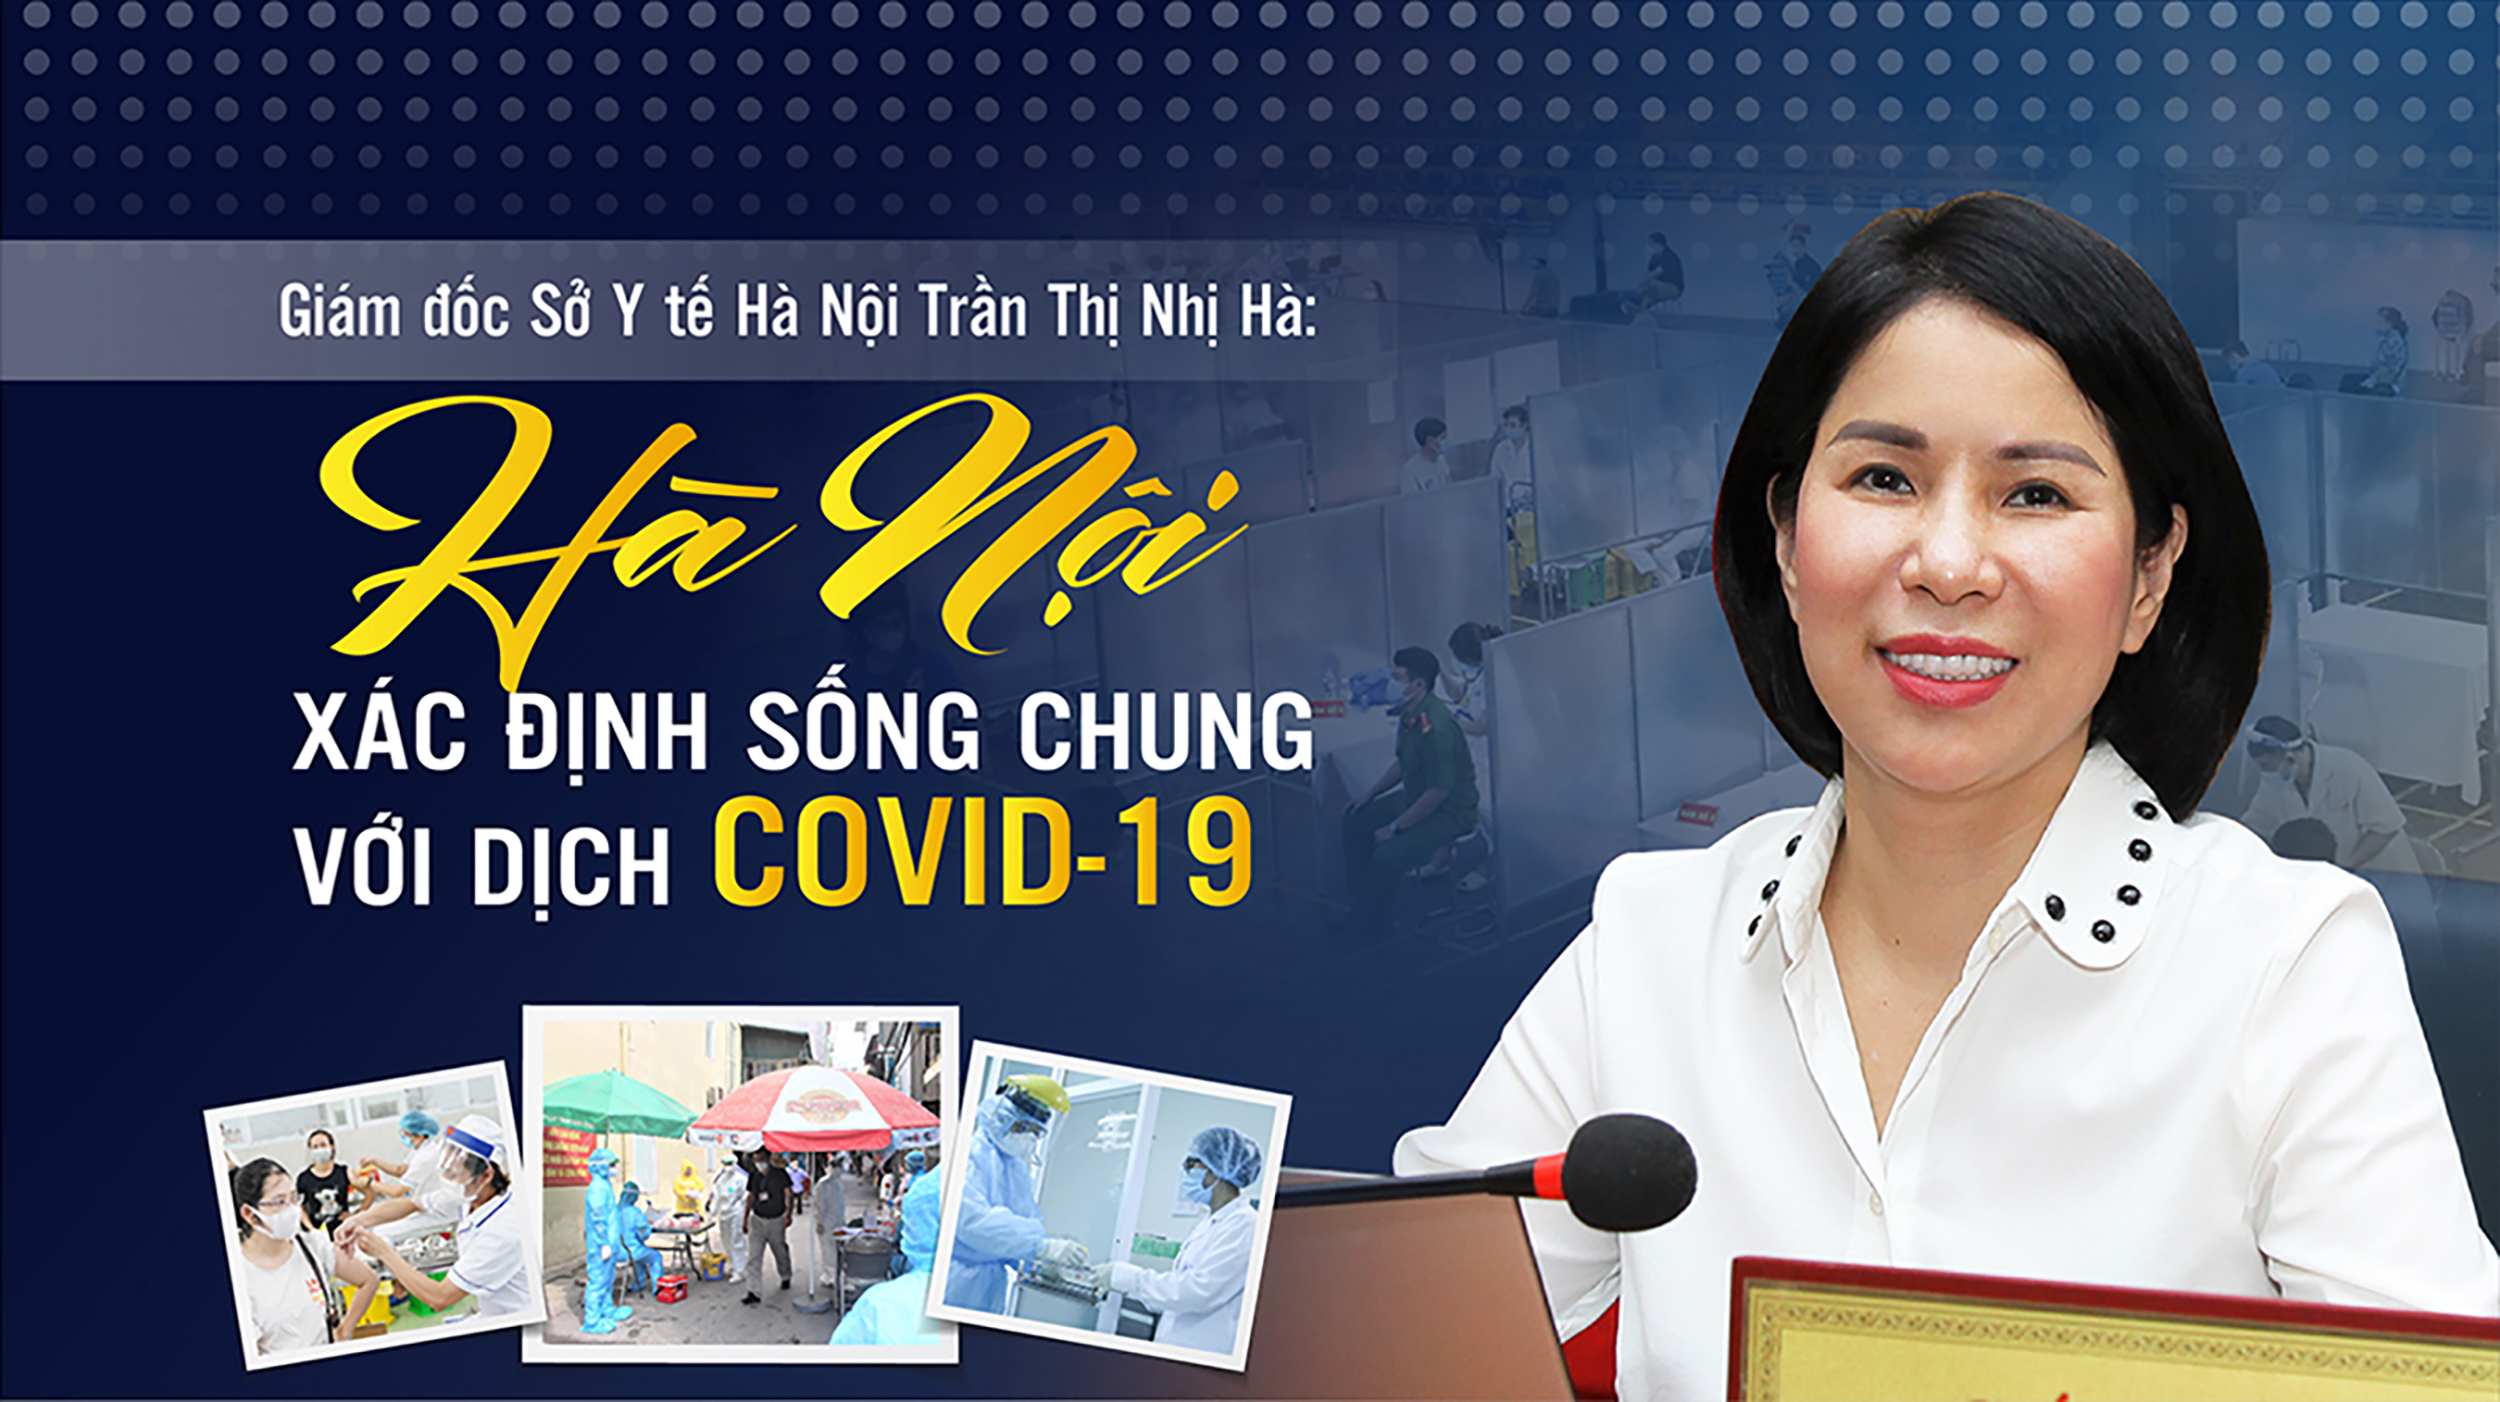 Giám đốc Sở Y tế Hà Nội Trần Thị Nhị Hà: Hà Nội xác định sống chung với dịch Covid-19 - Ảnh 1